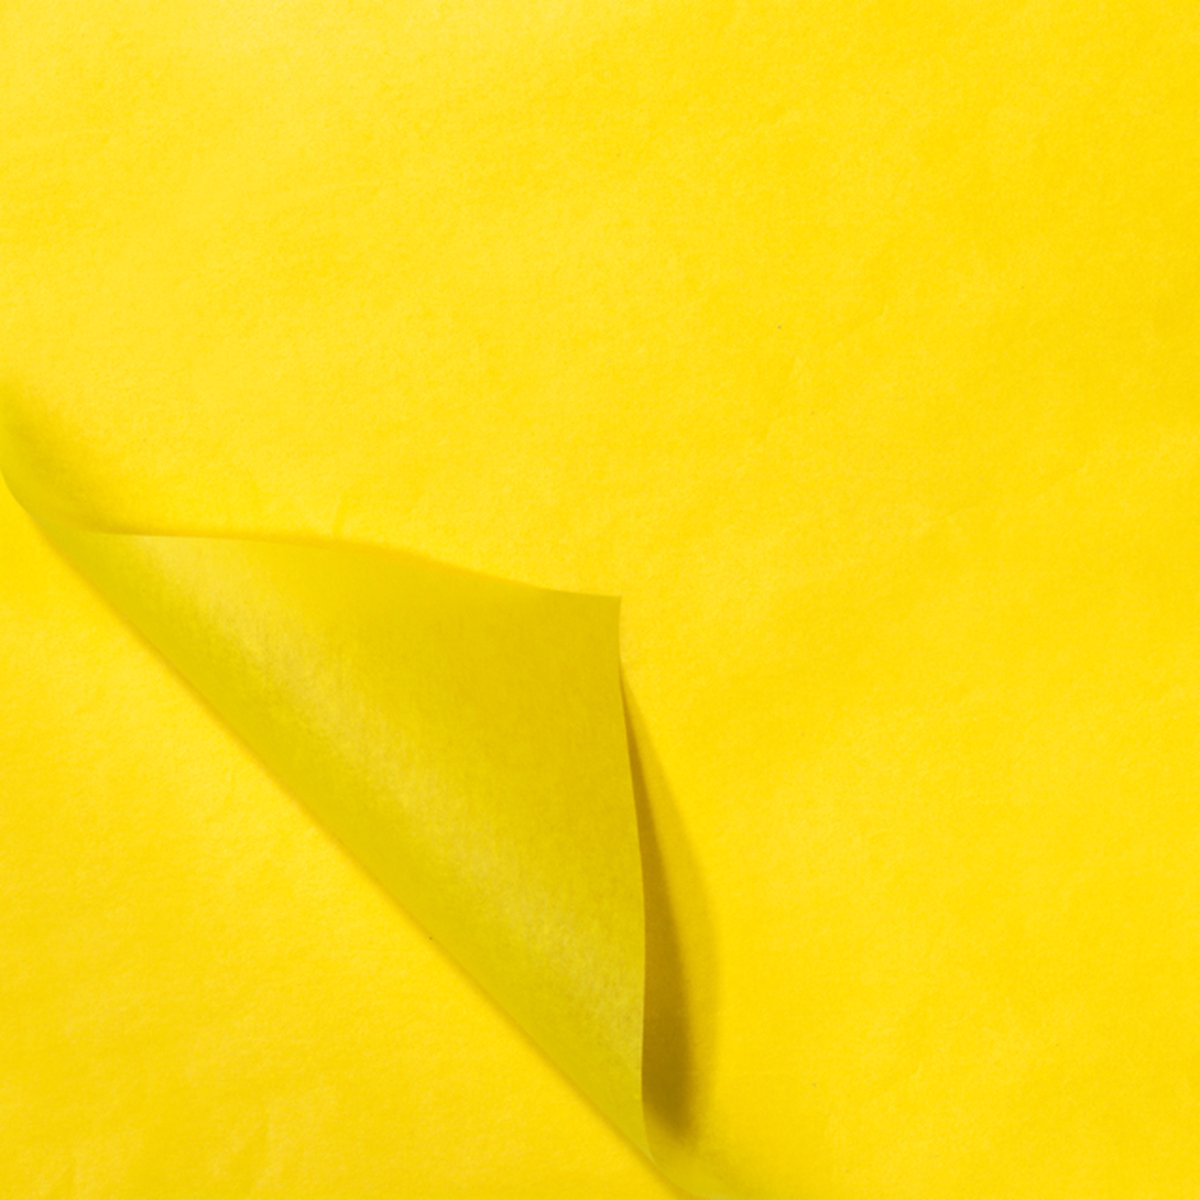 Zijdepapier vloeipapier tissue papier inpakpapier geel zijdevloei - 50x70 cm 17gr - 100 vellen - Verhuispapier - knutselen - inpakken en beschermen